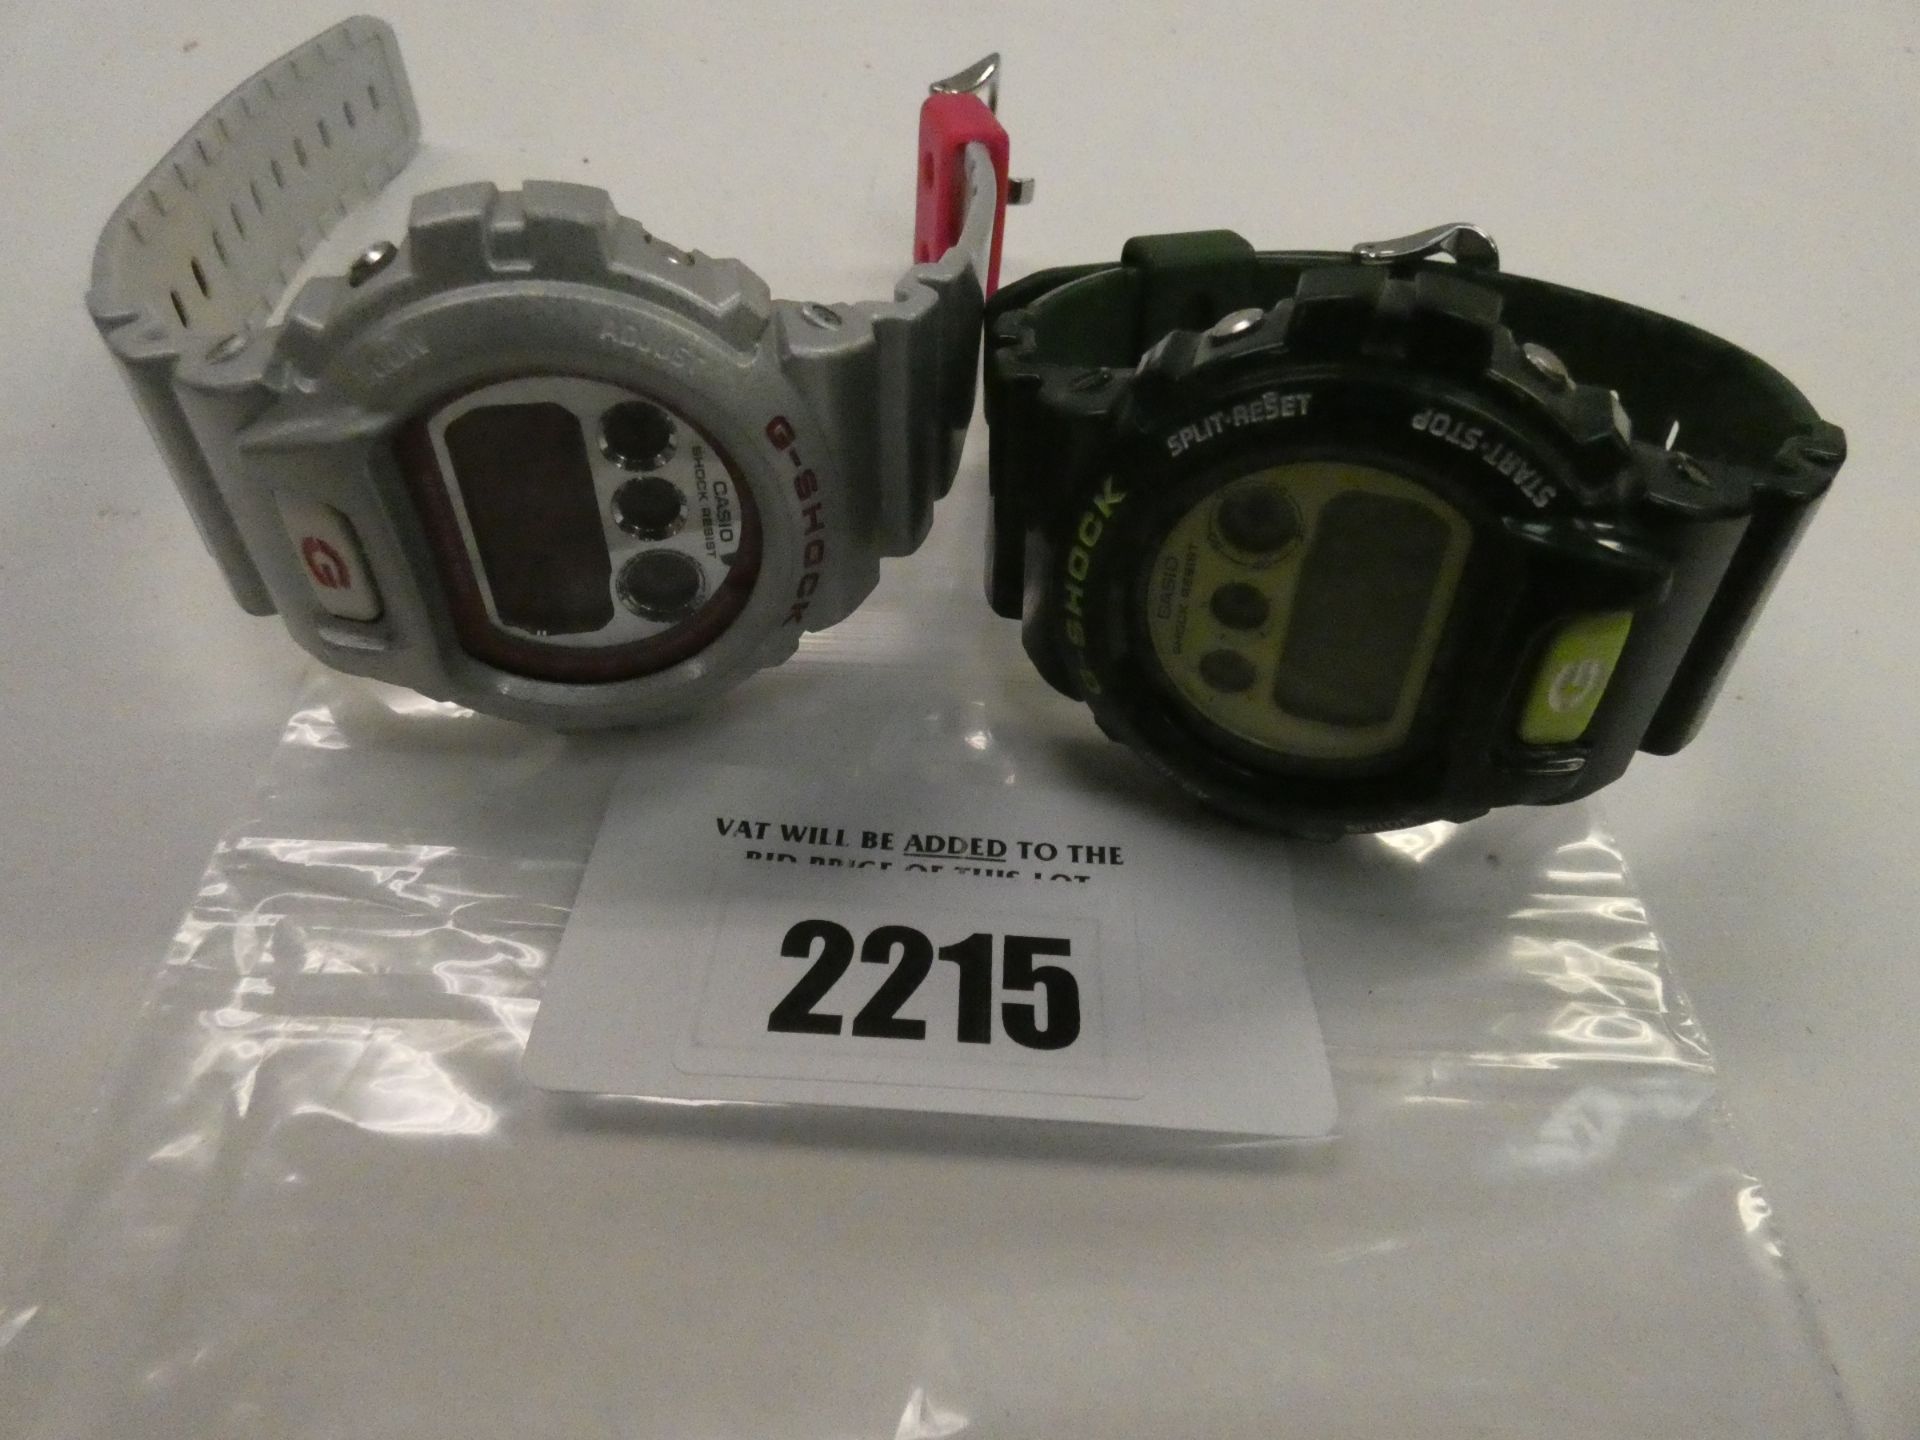 2x Casio G-Shock wristwatches